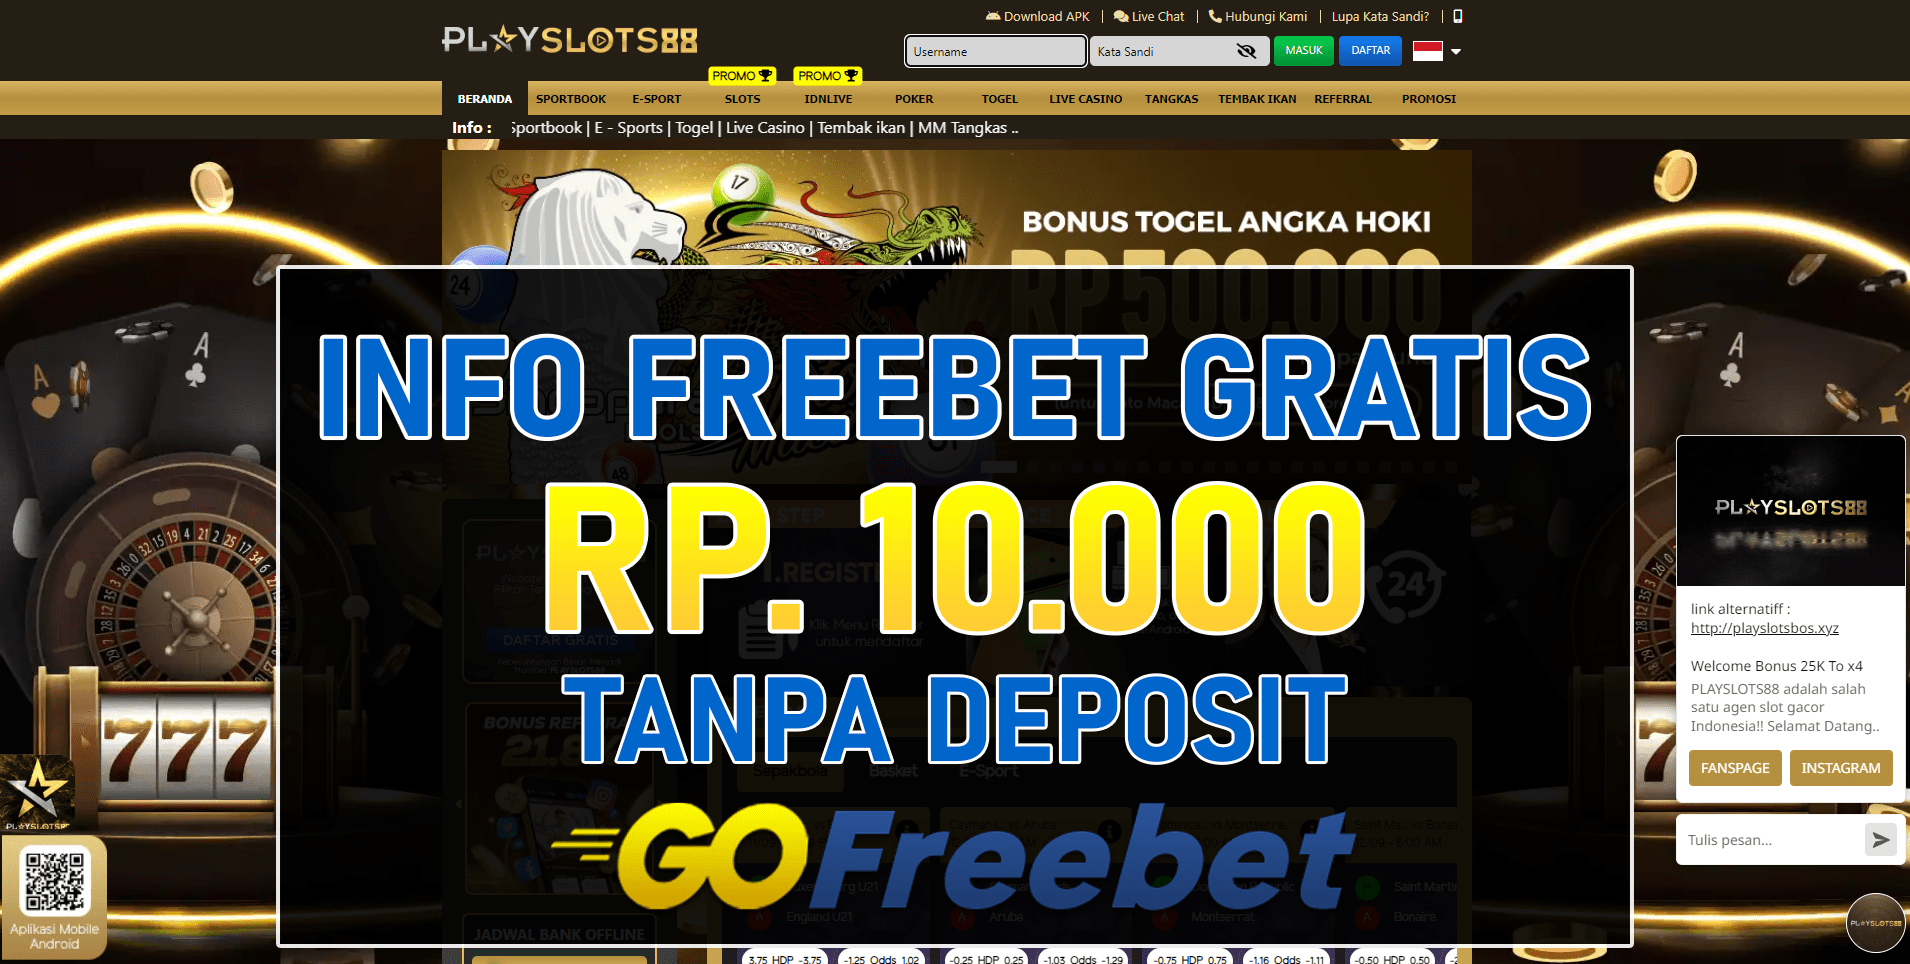 Playslots88 Freebet Gratis Tanpa Deposit Terbaru